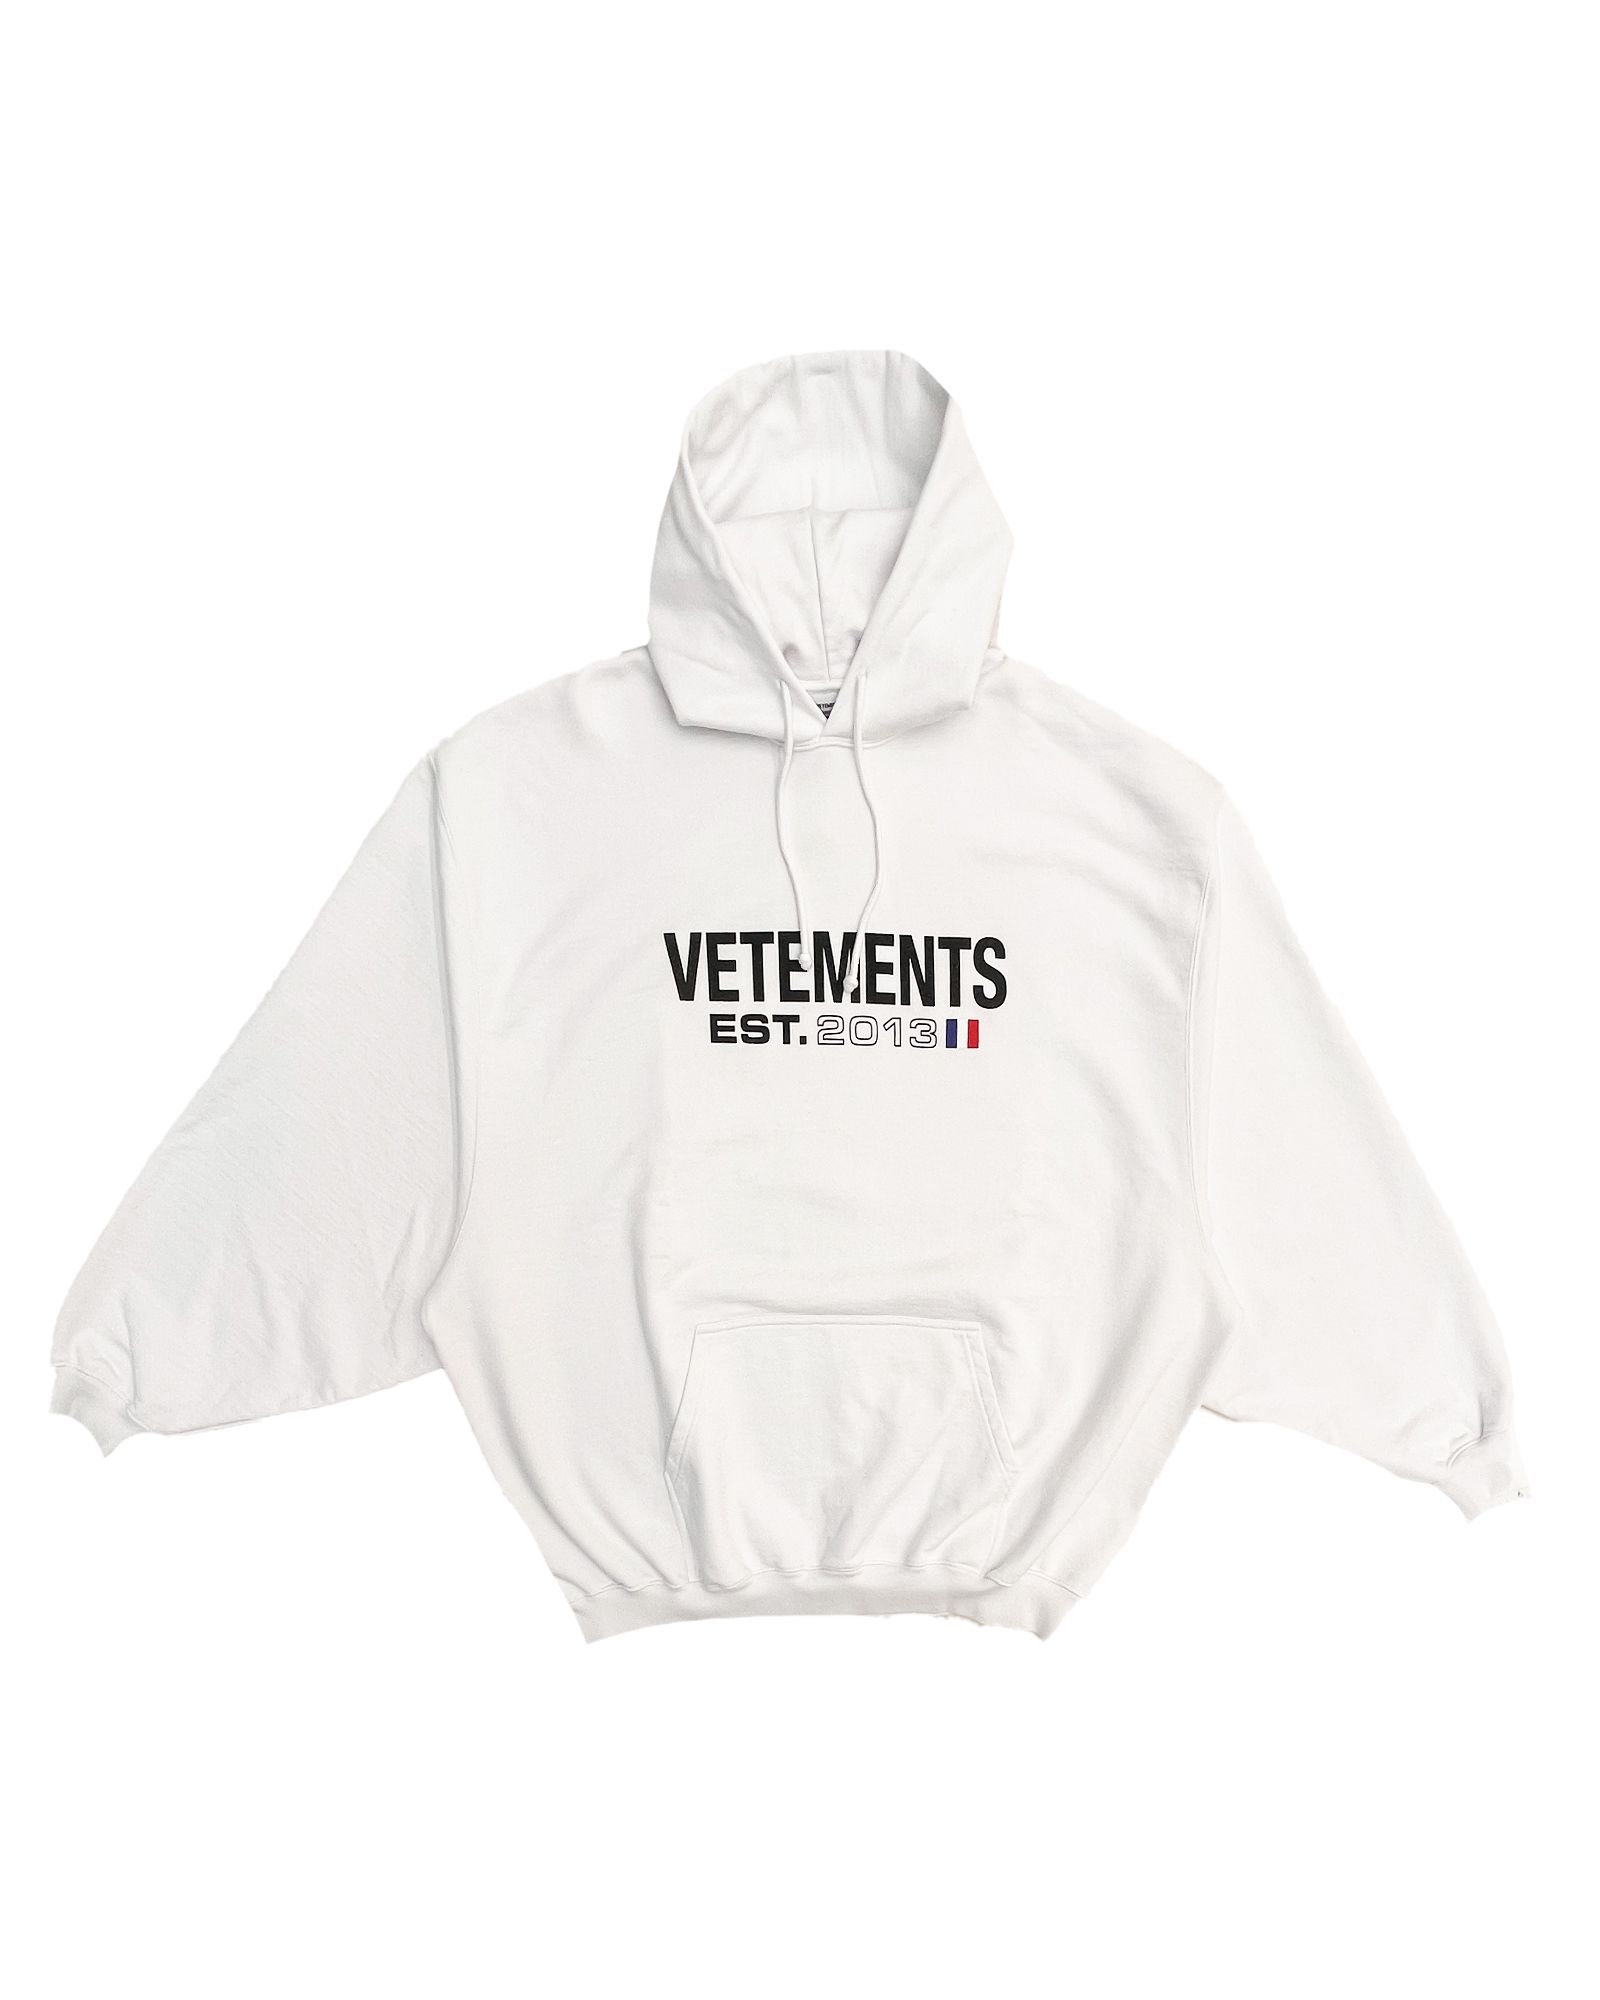 VETEMENTS - ヴェトモン/Flag logo hoodie/プルオーバーパーカー/White ...